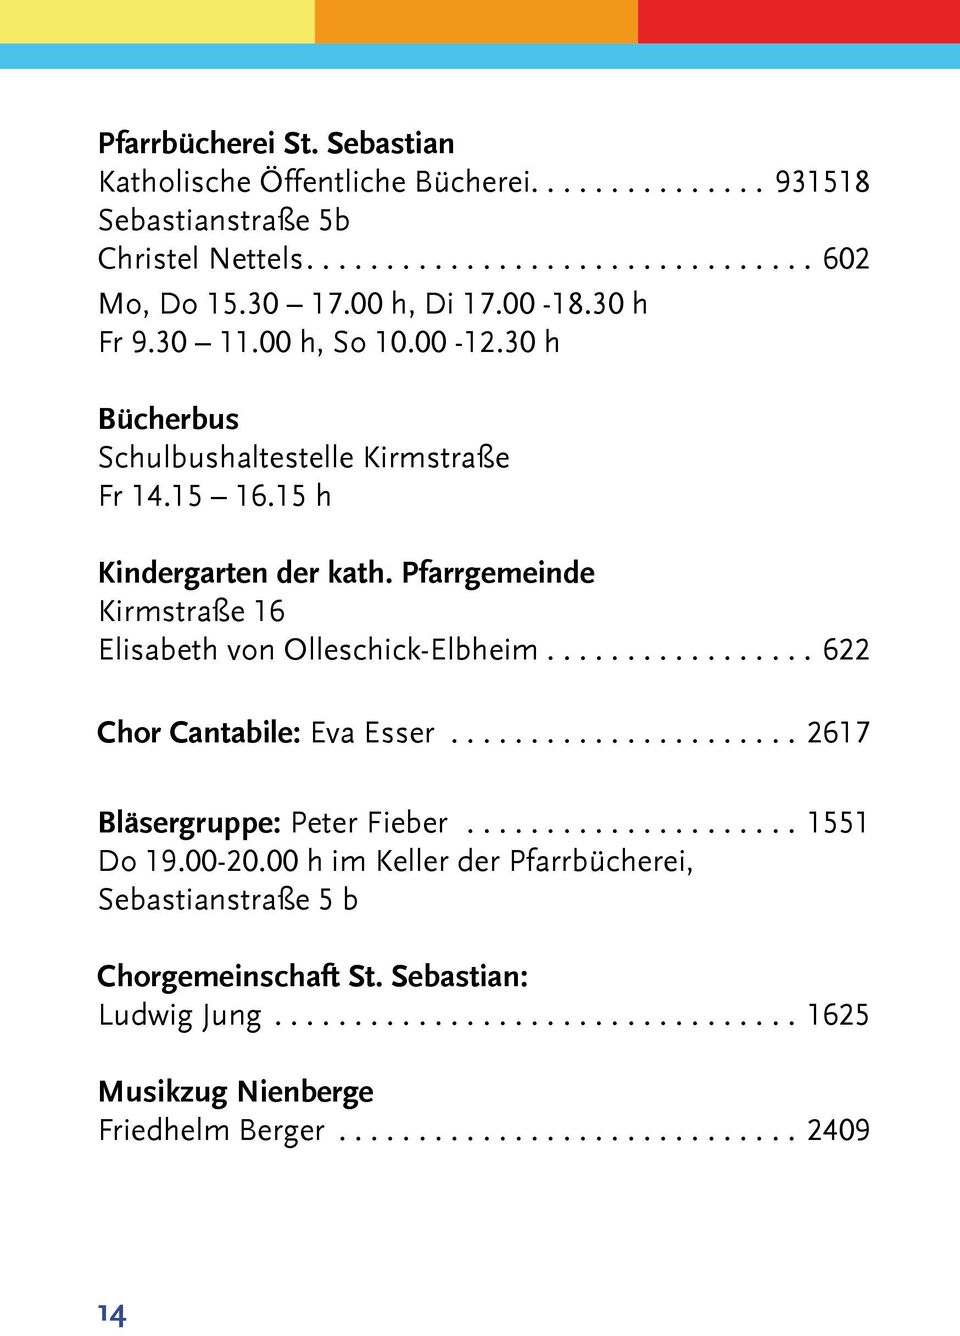 Pfarrgemeinde Kirmstraße 16 Elisabeth von Olleschick-Elbheim................. 622 Chor Cantabile: Eva Esser...................... 2617 Bläsergruppe: Peter Fieber..................... 1551 Do 19.